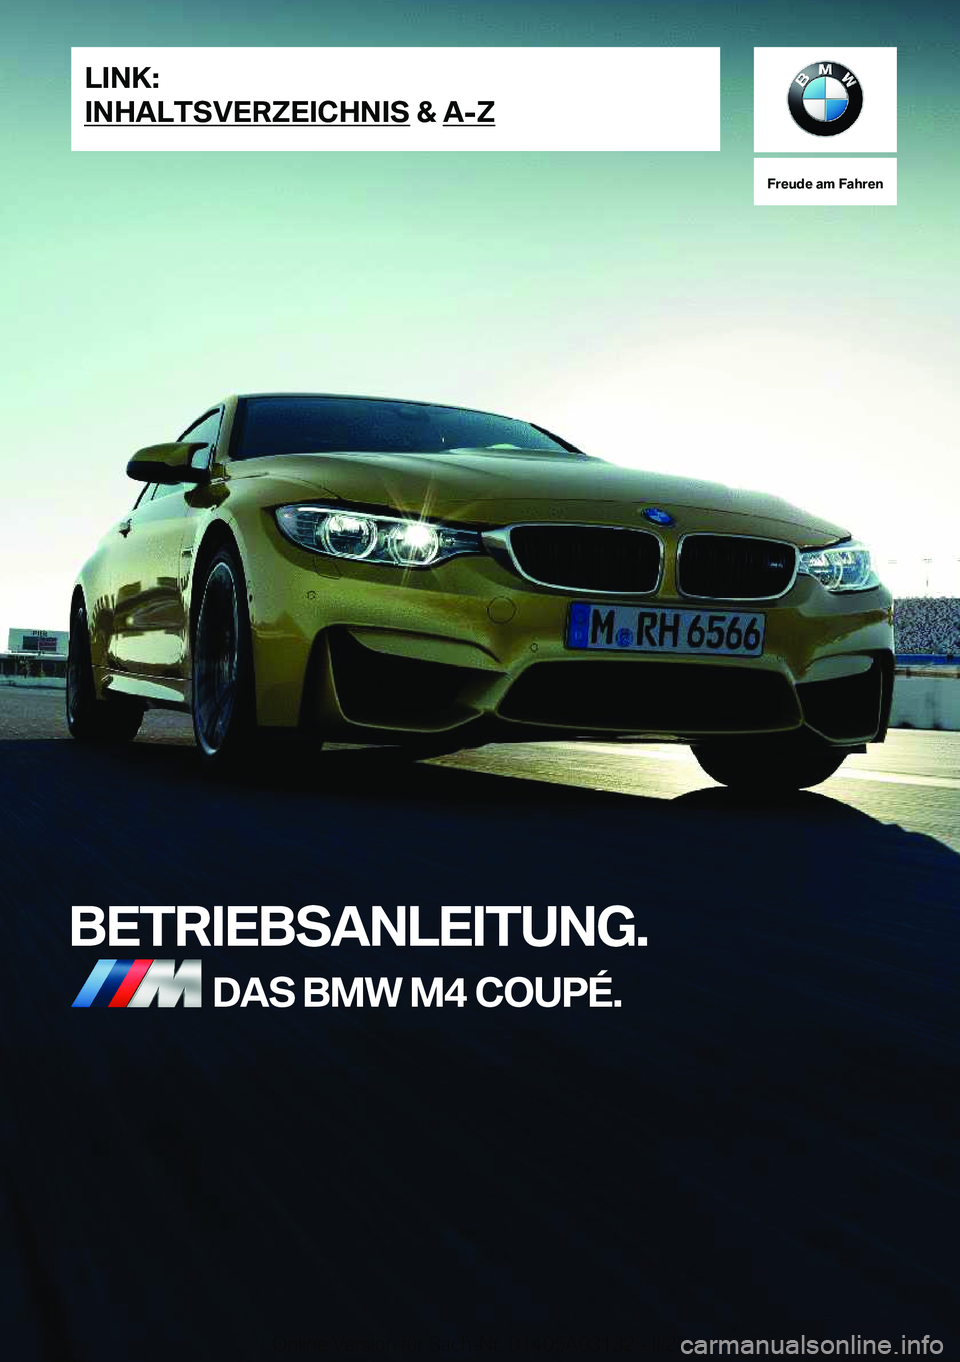 BMW M4 2020  Betriebsanleitungen (in German) �F�r�e�u�d�e��a�m��F�a�h�r�e�n
�B�E�T�R�I�E�B�S�A�N�L�E�I�T�U�N�G�.�D�A�S��B�M�W��M�4��C�O�U�P�